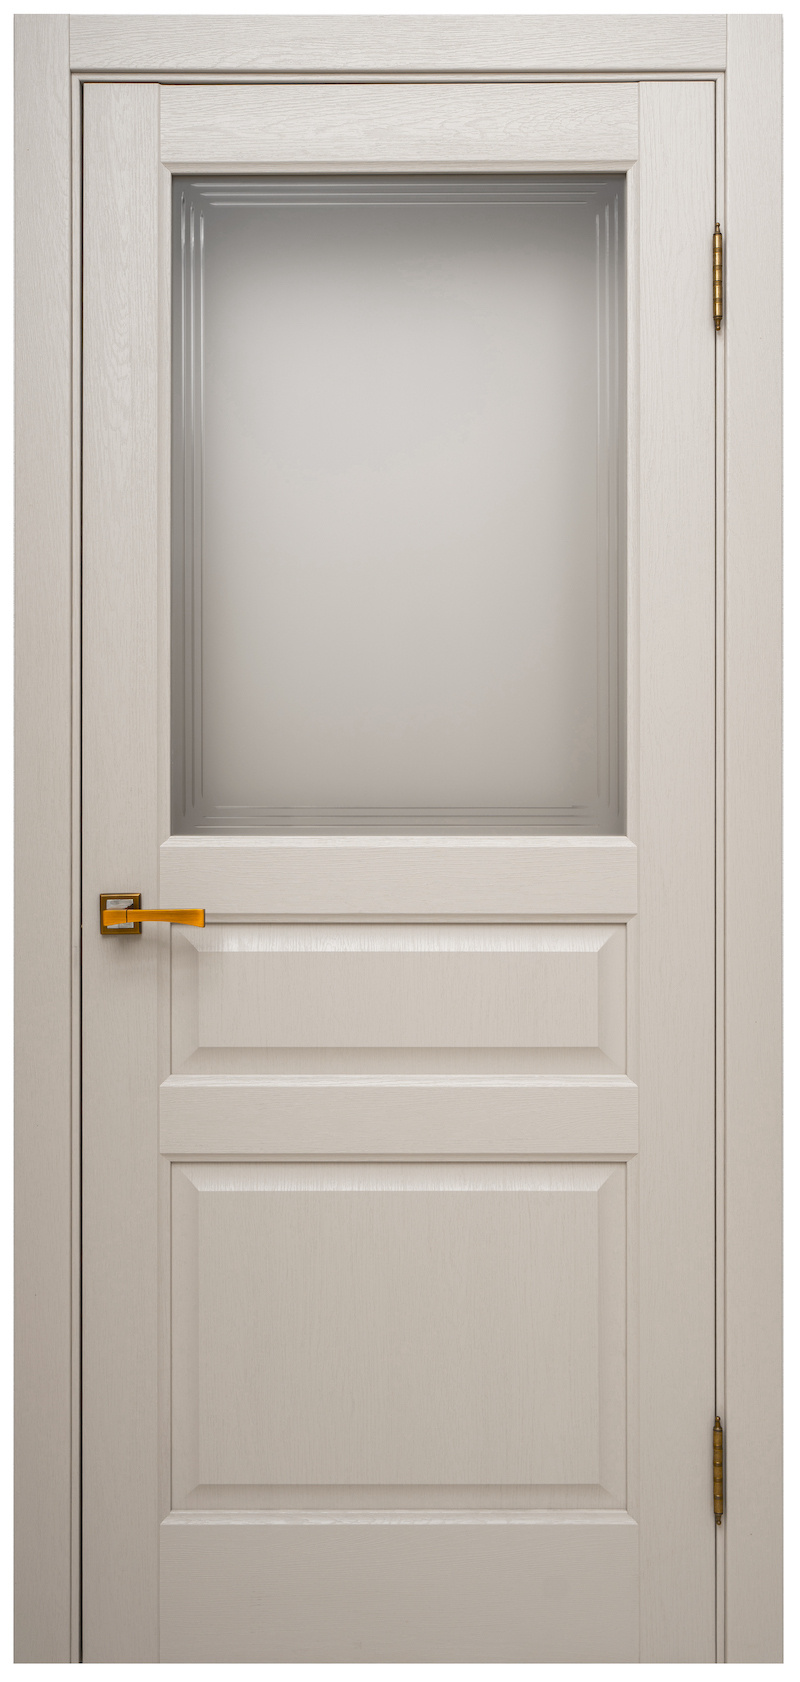 Questdoors Межкомнатная дверь QD 4 ДО, арт. 10056 - фото №1